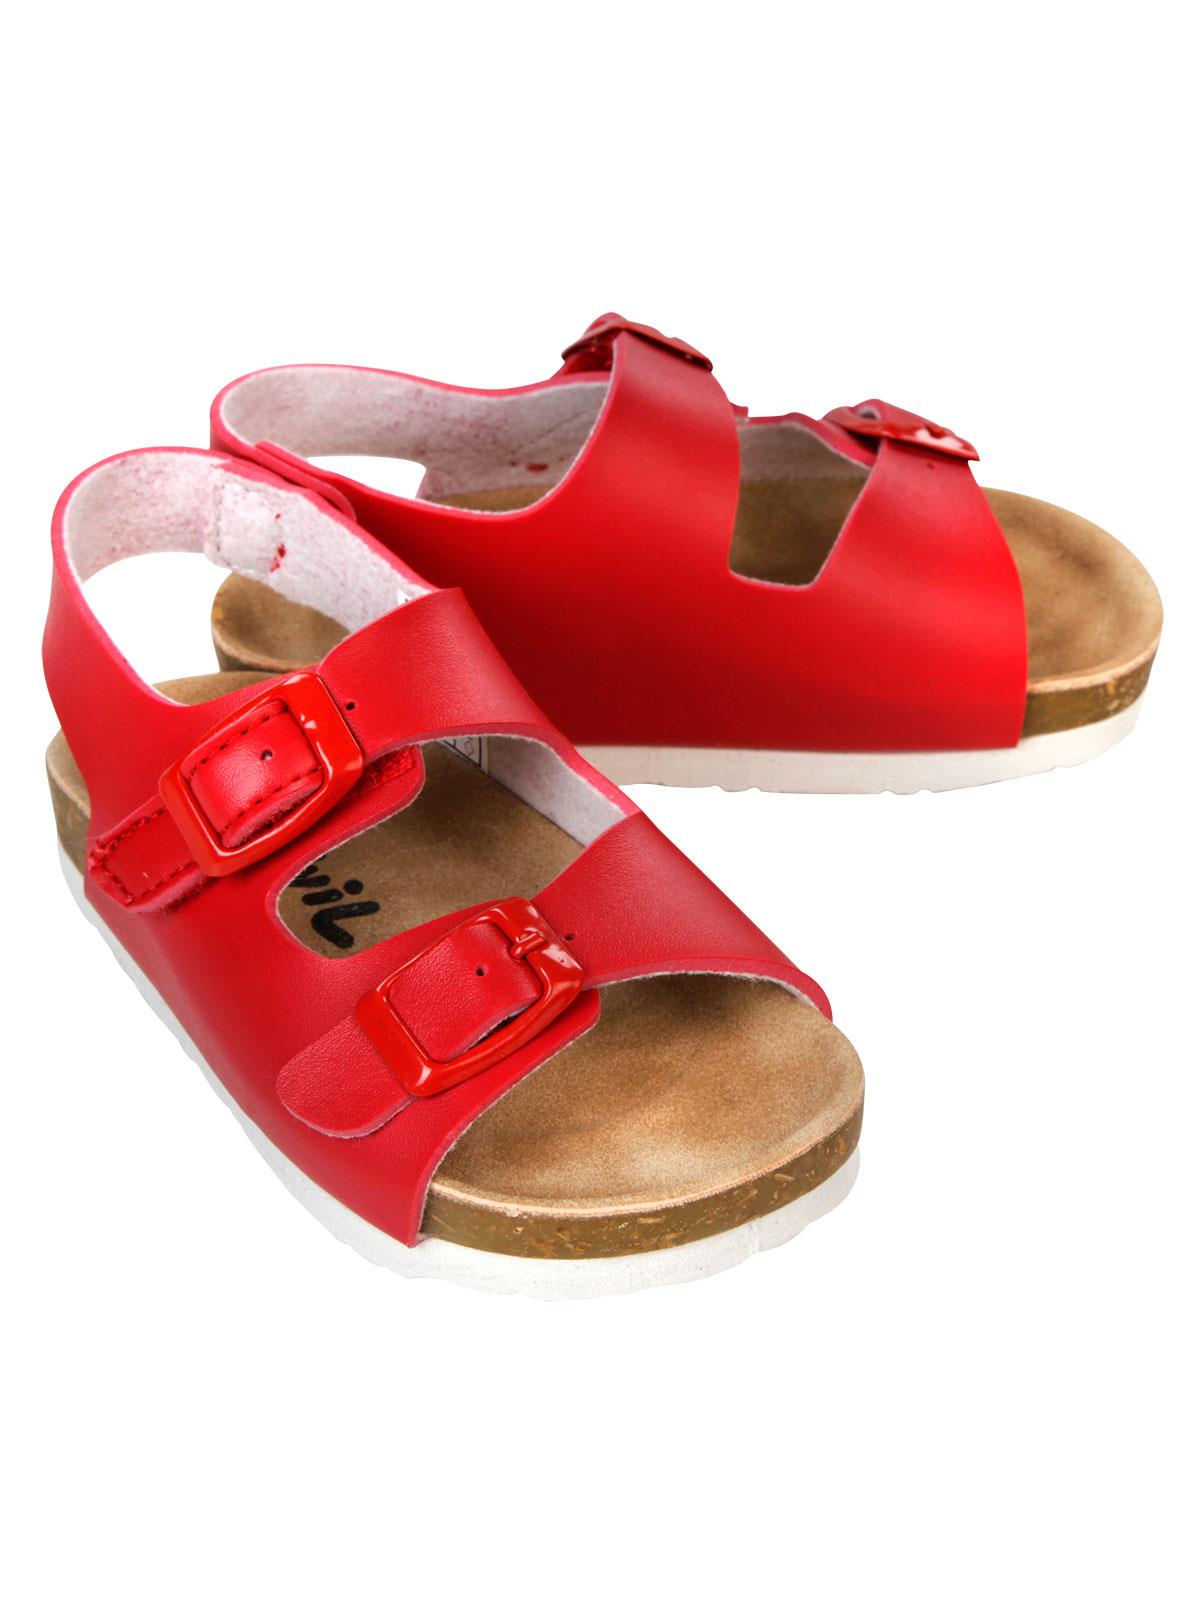 Civil Erkek Çocuk Sandalet 22-25 Numara Kırmızı